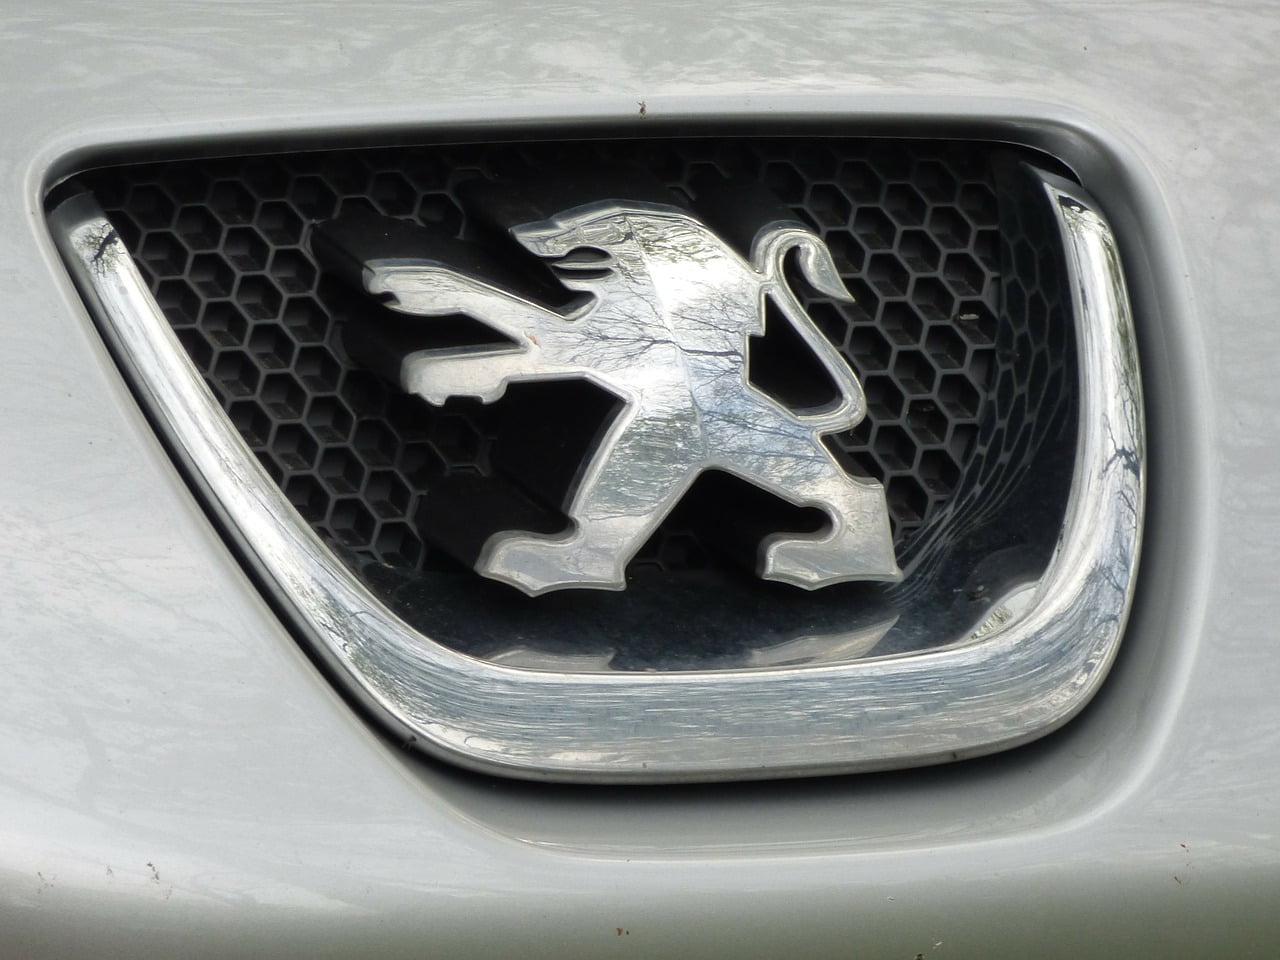 Peugeot Diselgate Enquete Accusation Logiciel Truqueur Emissions Polluantes